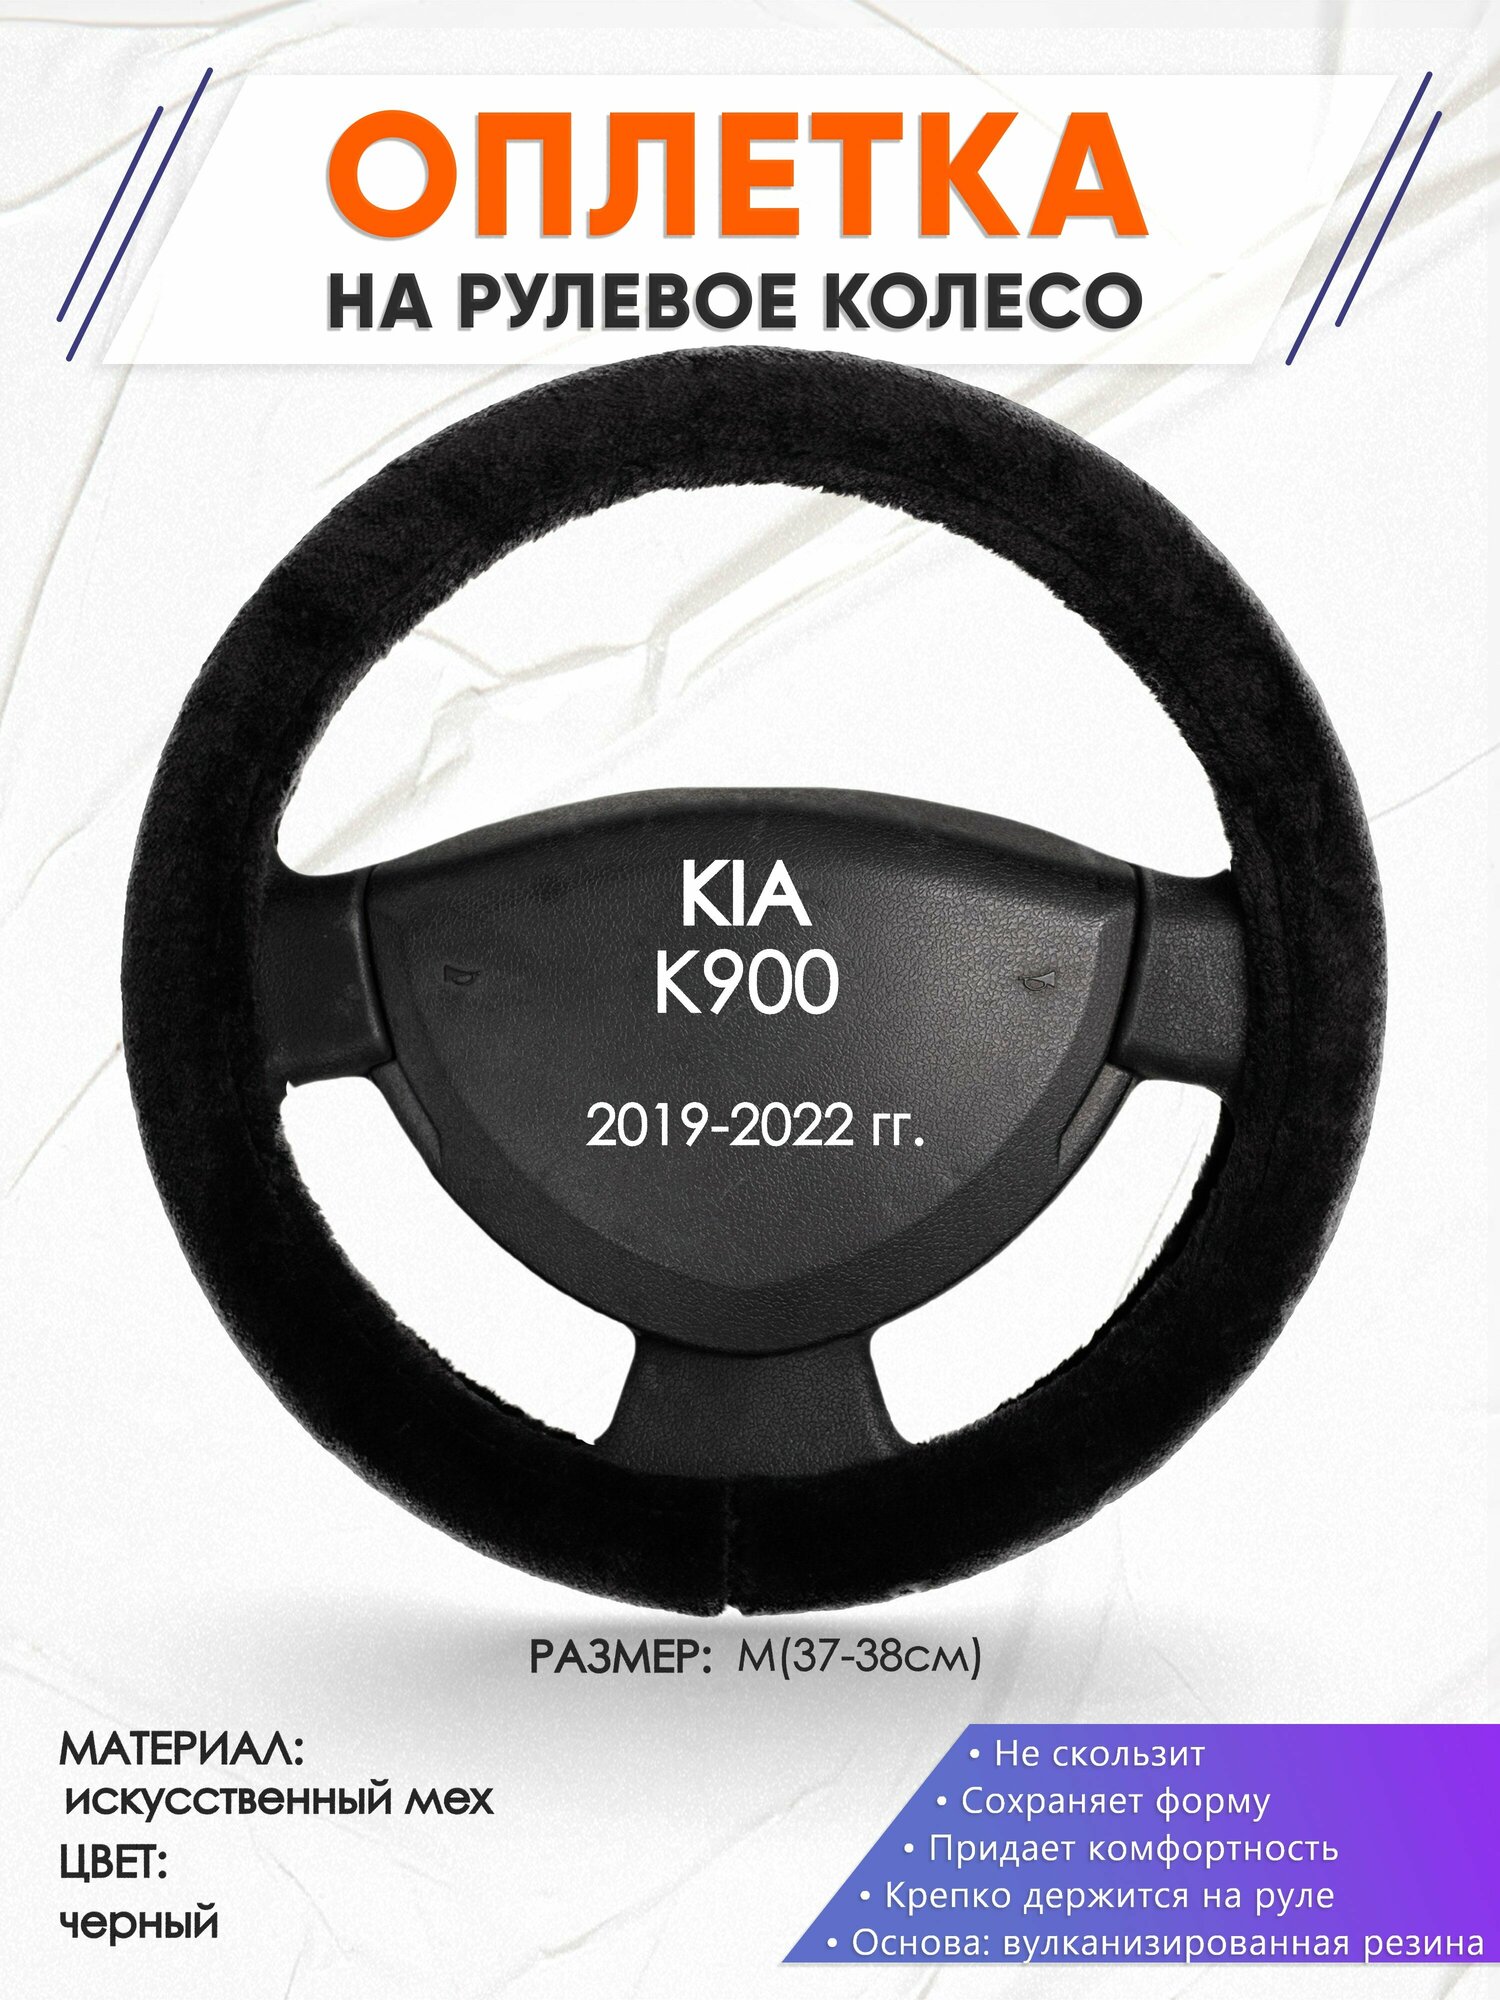 Оплетка наруль для KIA K900(Киа К900) 2019-2022 годов выпуска размер M(37-38см) Искусственный мех 41